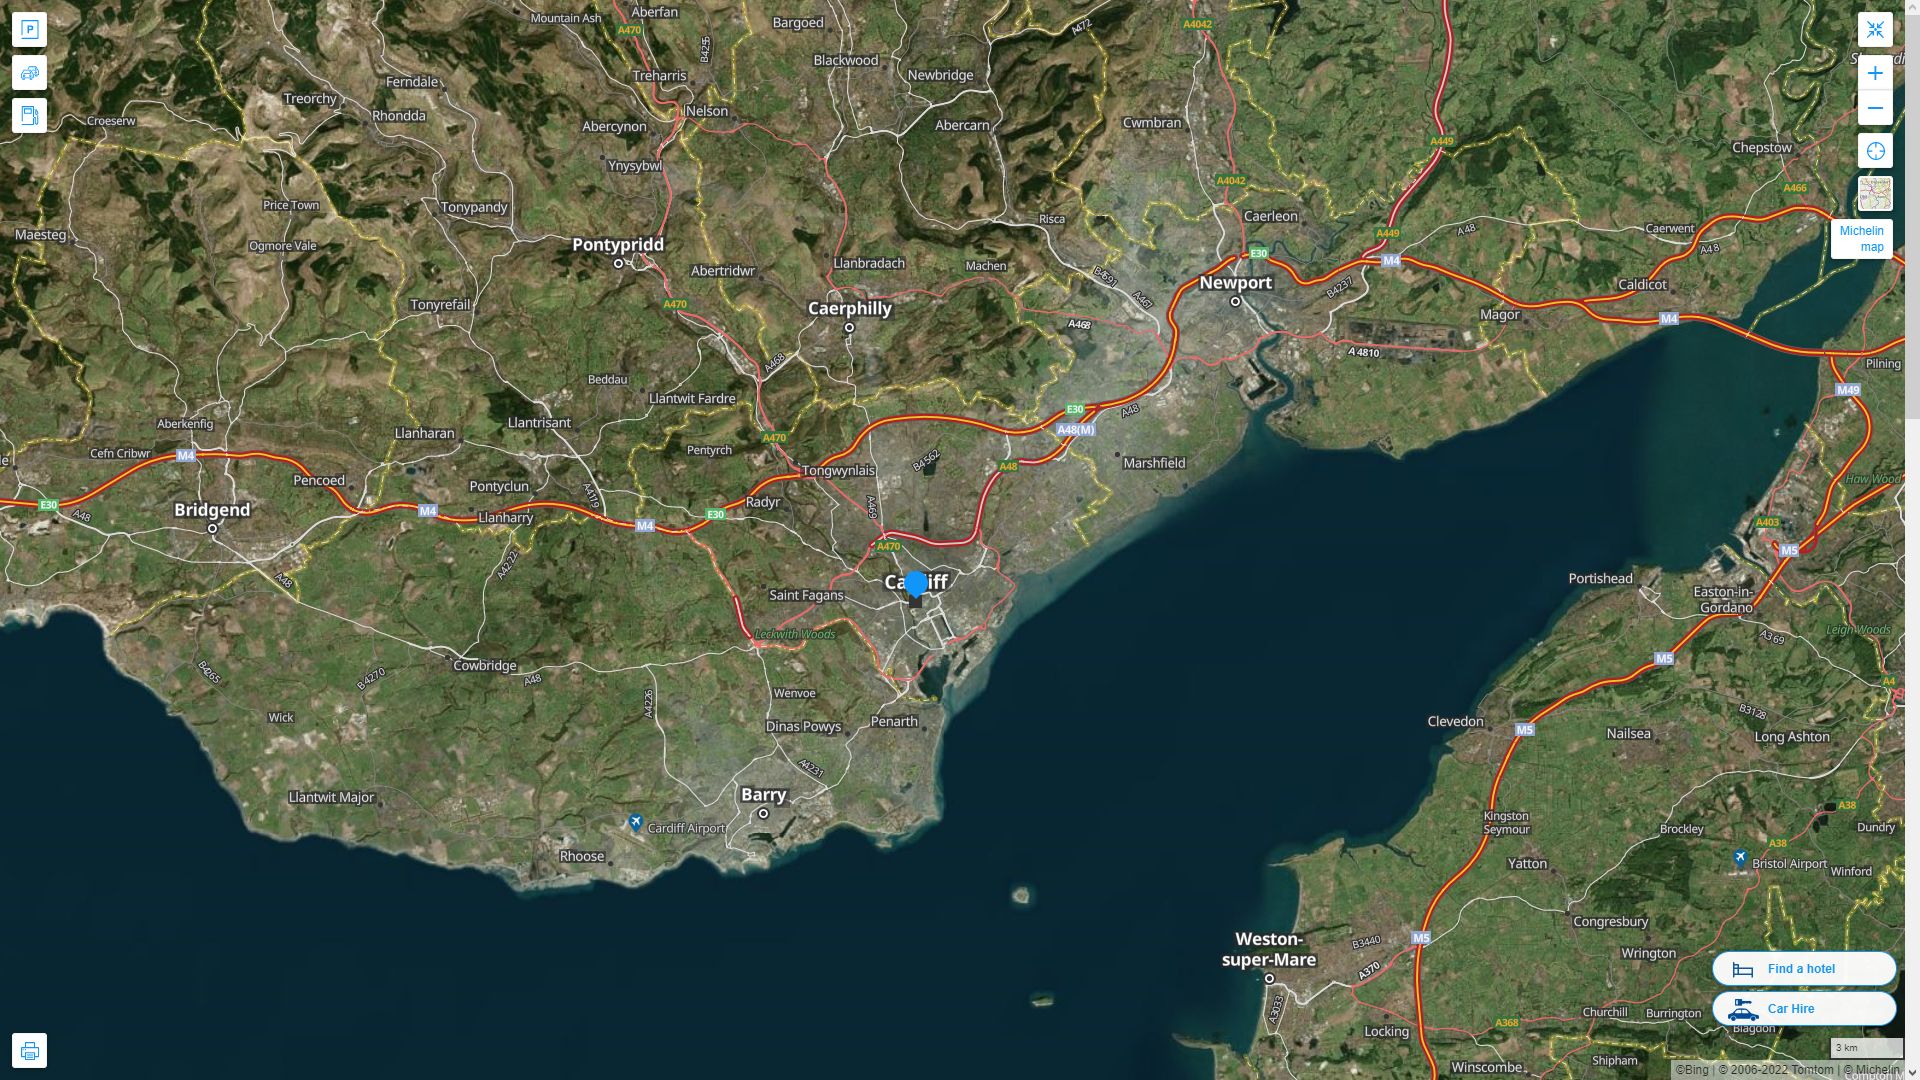 Cardiff Royaume Uni Autoroute et carte routiere avec vue satellite